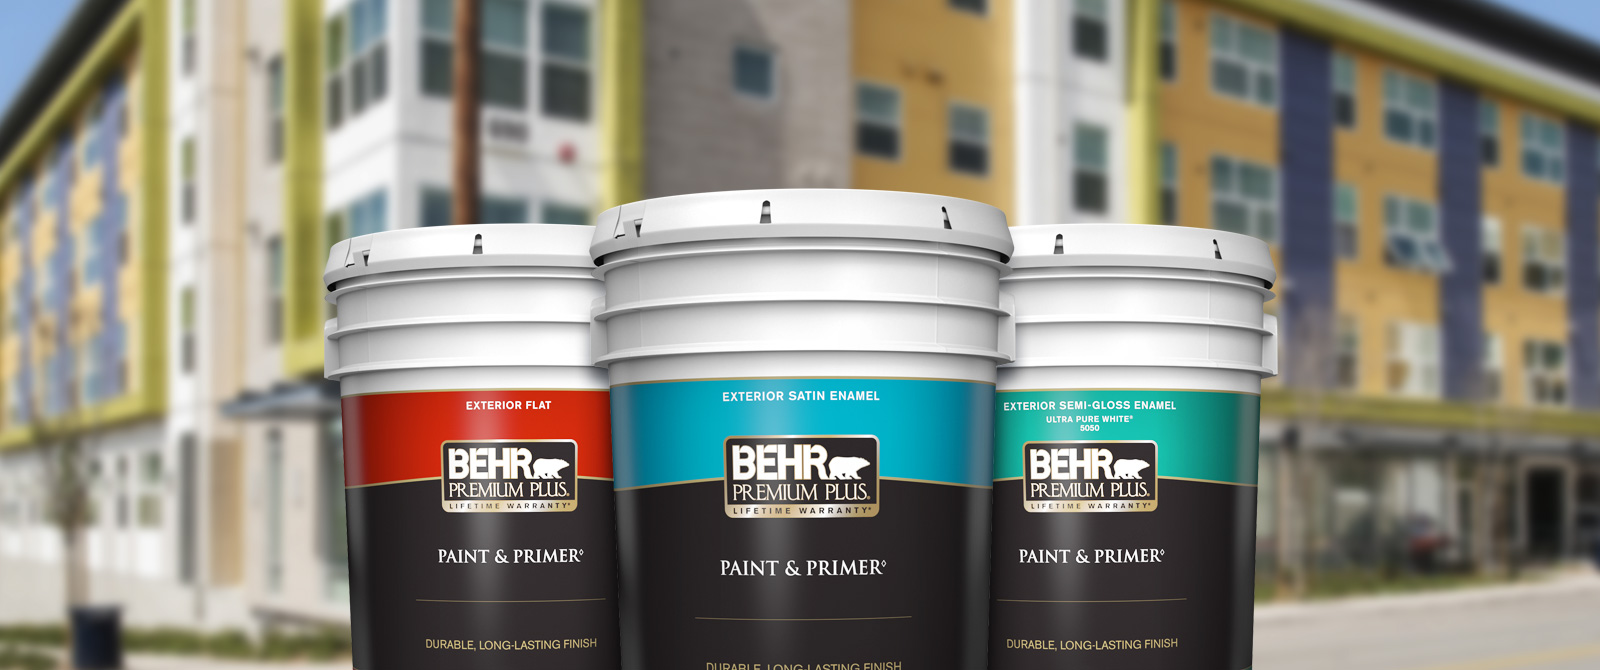 Behr Pro Exterior Premium Plus products landing page desktop image featuring 5 gallon Premium Plus cans.